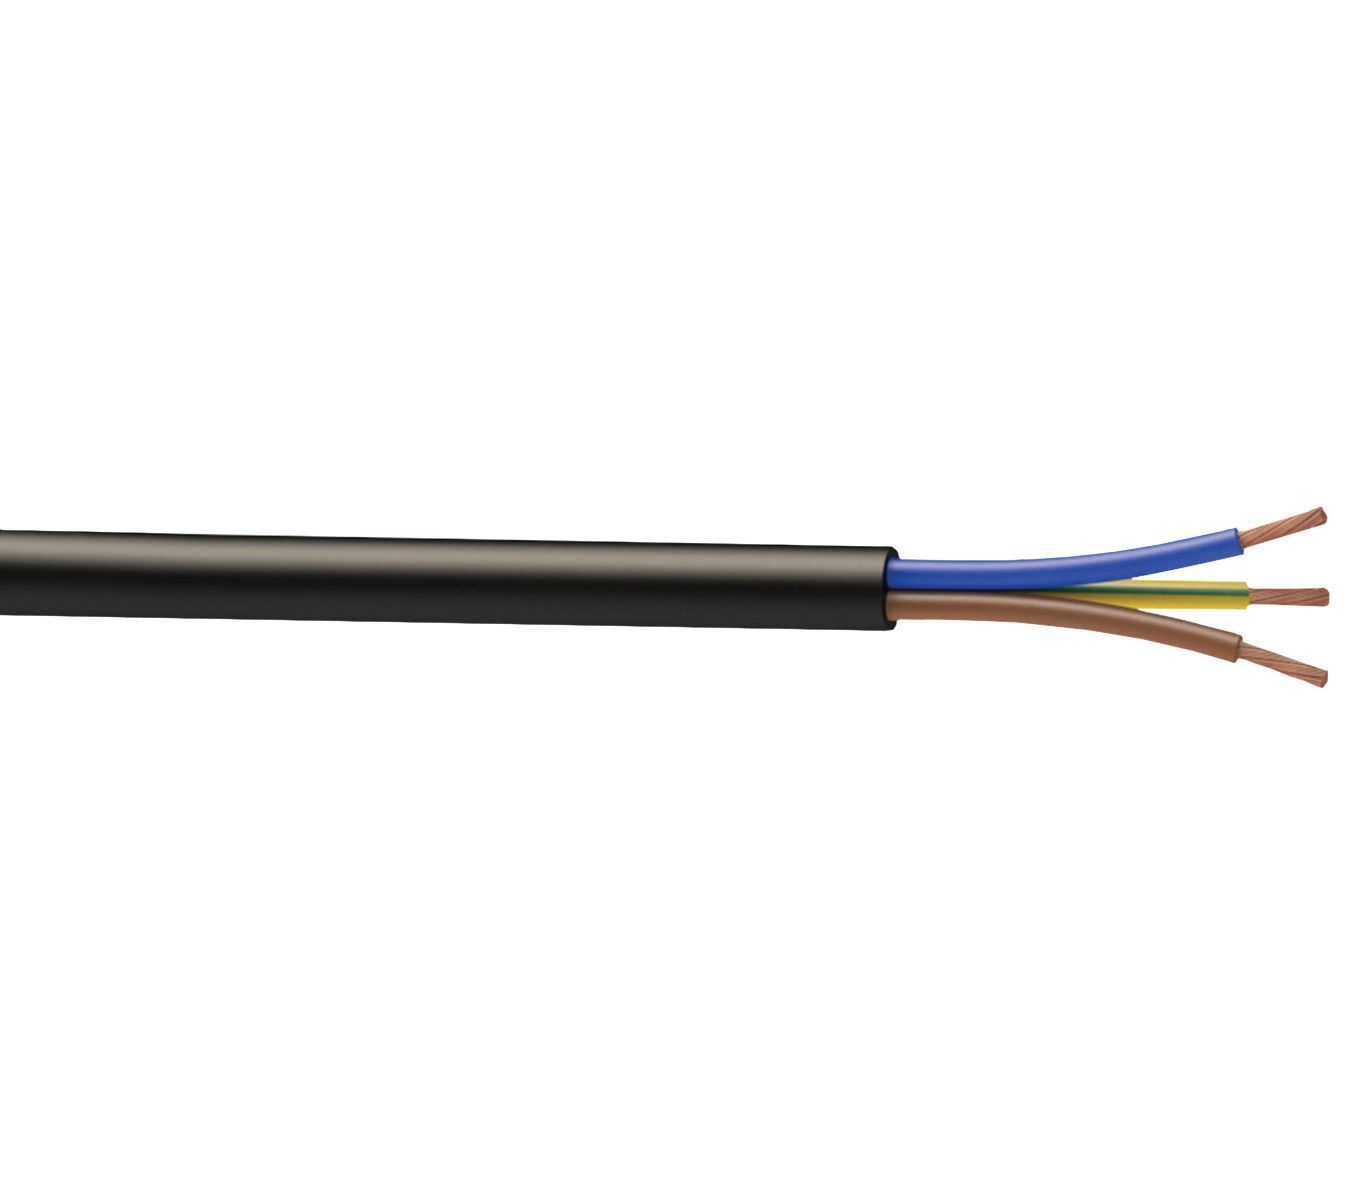 Nexans Black Cable 2.5mm² x 10m